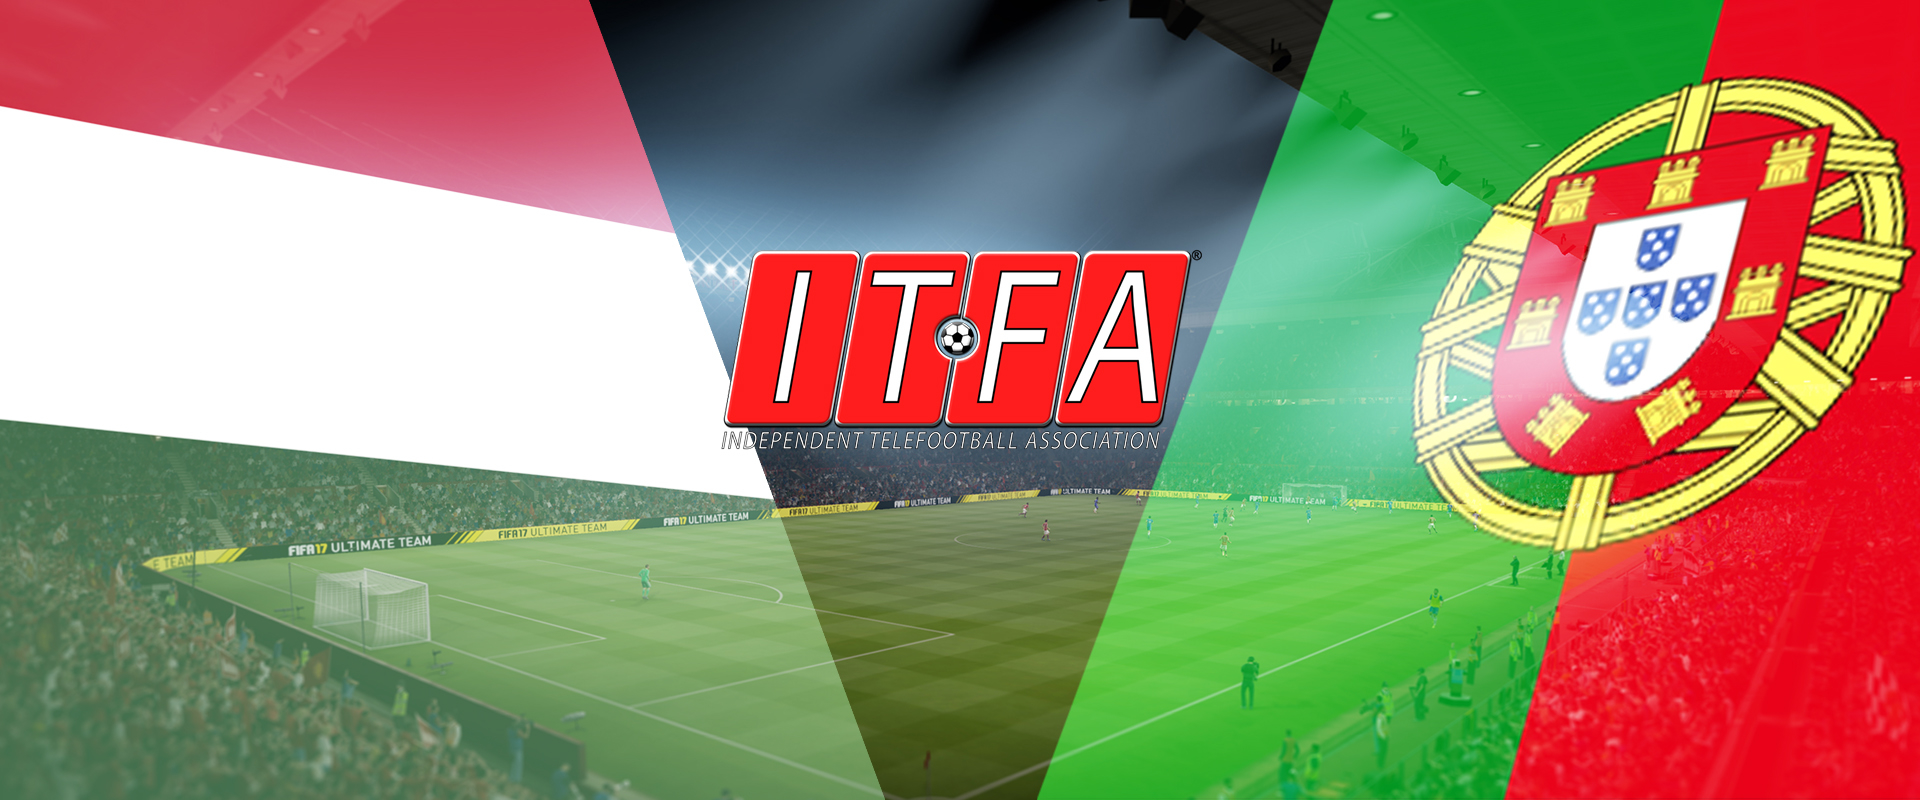 FIFA17: Portugáliát kell legyőzni az ITFA vb-re kijutásért vasárnap este!